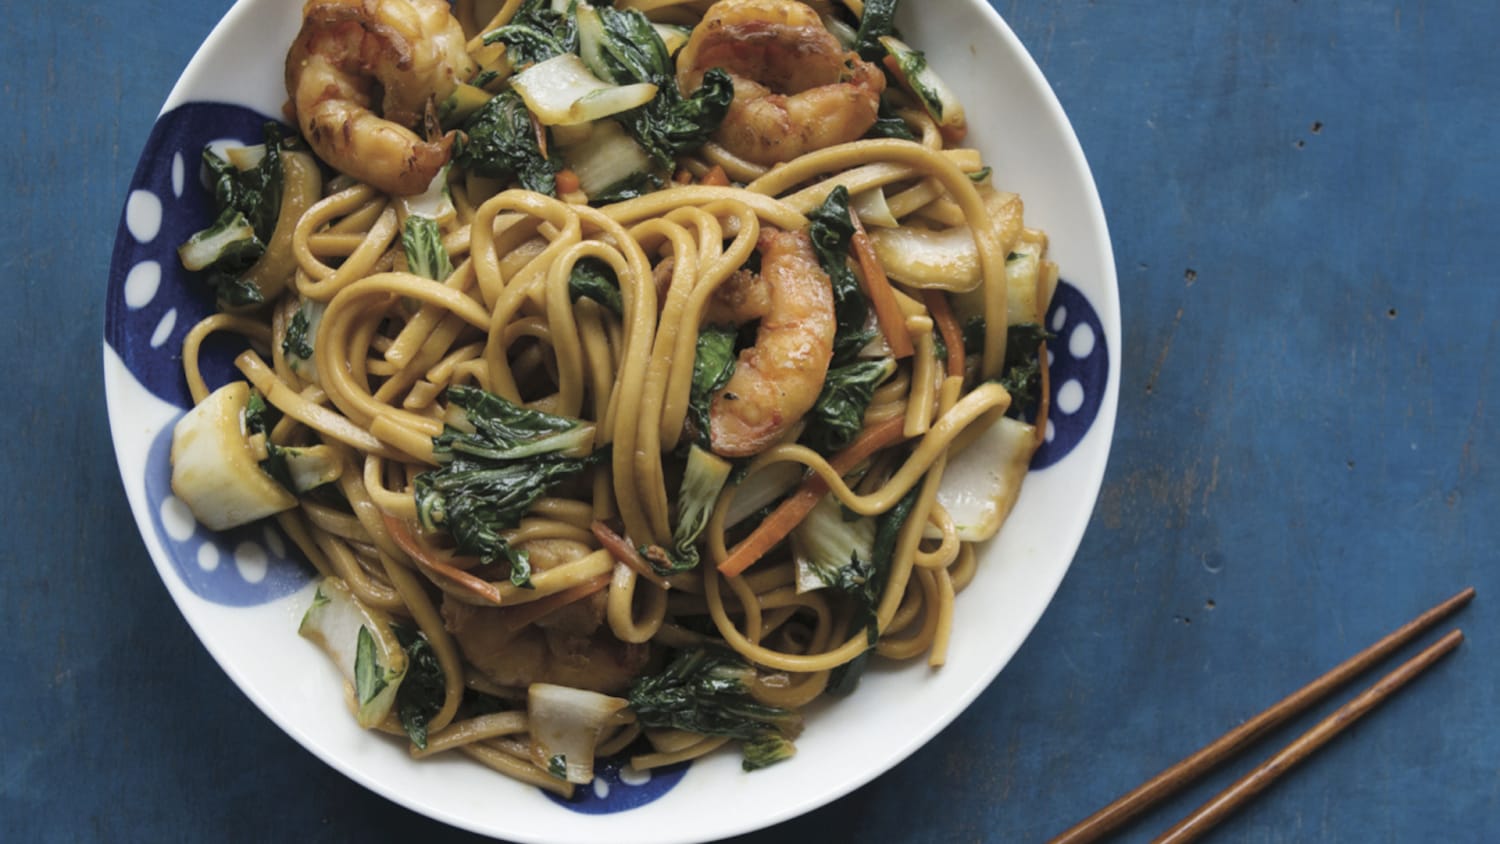 https://media-cldnry.s-nbcnews.com/image/upload/newscms/2018_07/1318562/stir-fried-noodles-shrimp-vegetables-today-021618-tease.jpg